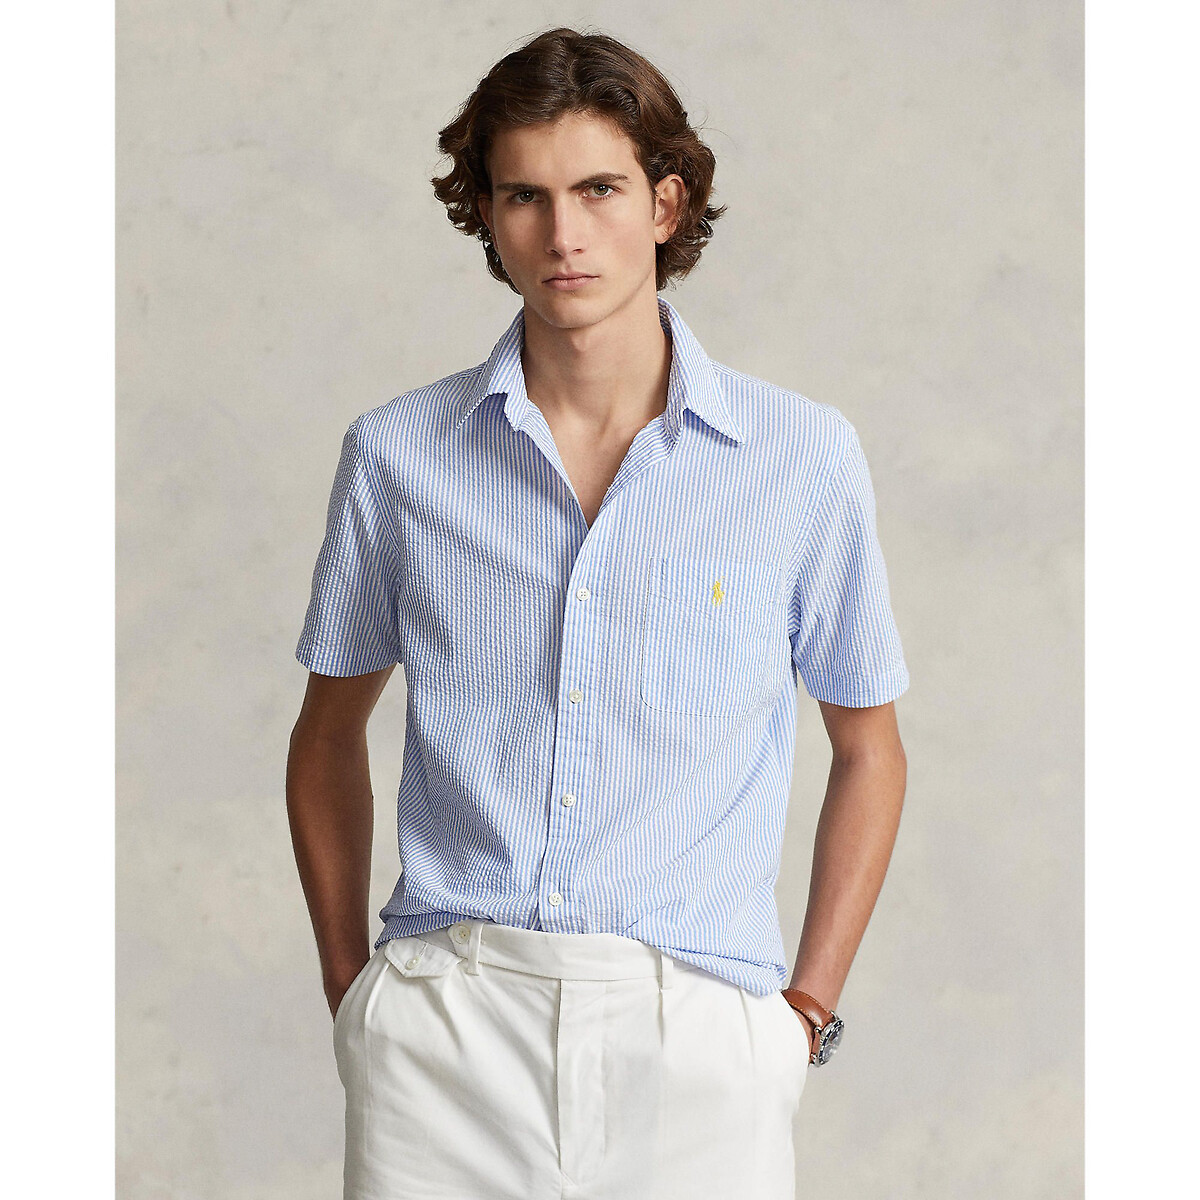 Рубашка из легкой полосатой ткани с вышитым логотипом XXL синий рубашка из легкой полосатой ткани с вышитым логотипом s синий